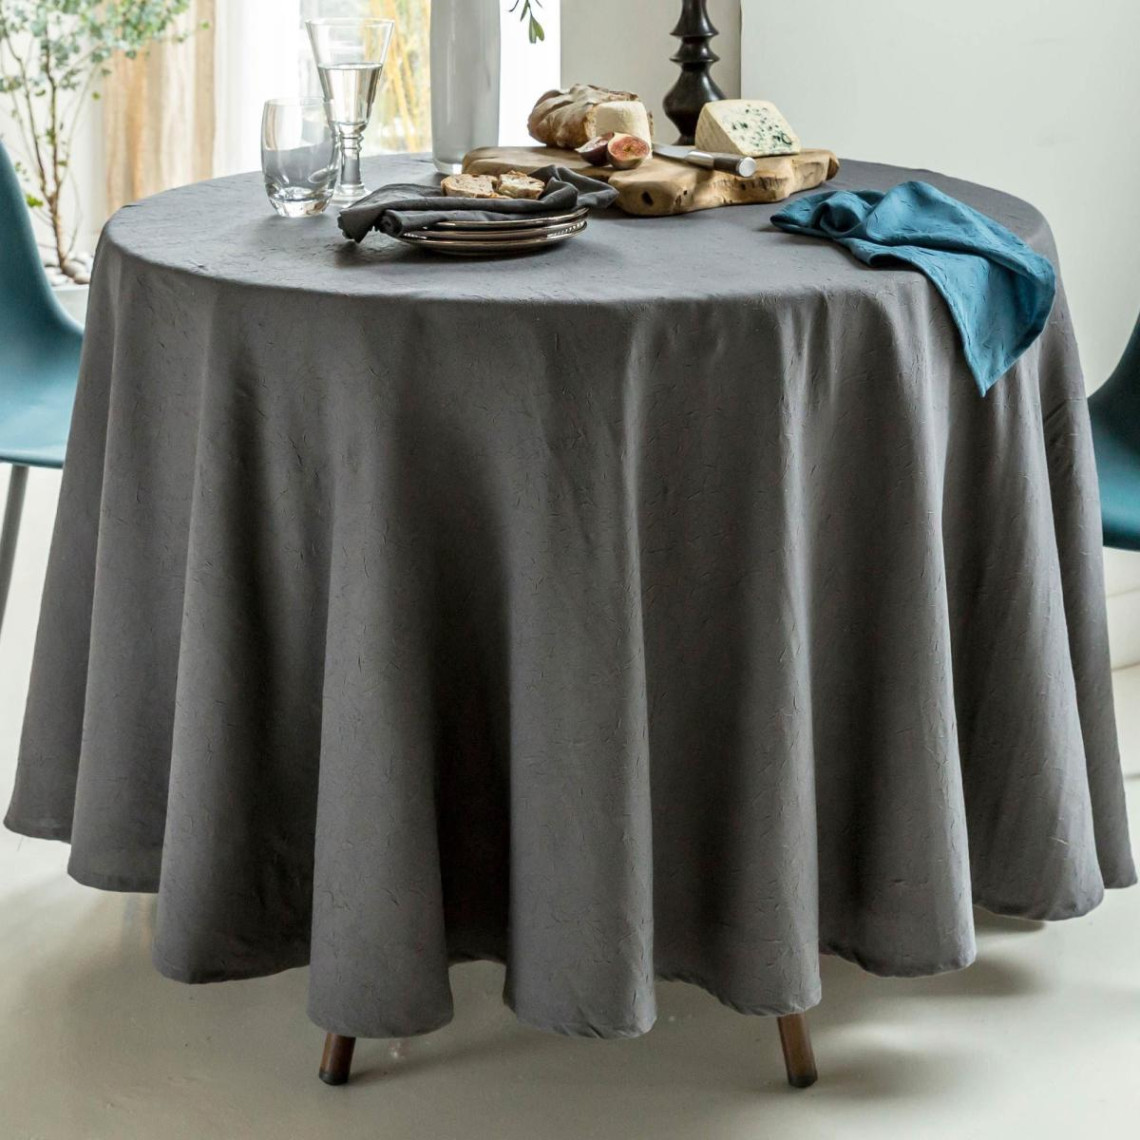 lot de 3 serviettes de table effet froissé fontana gris anthracite